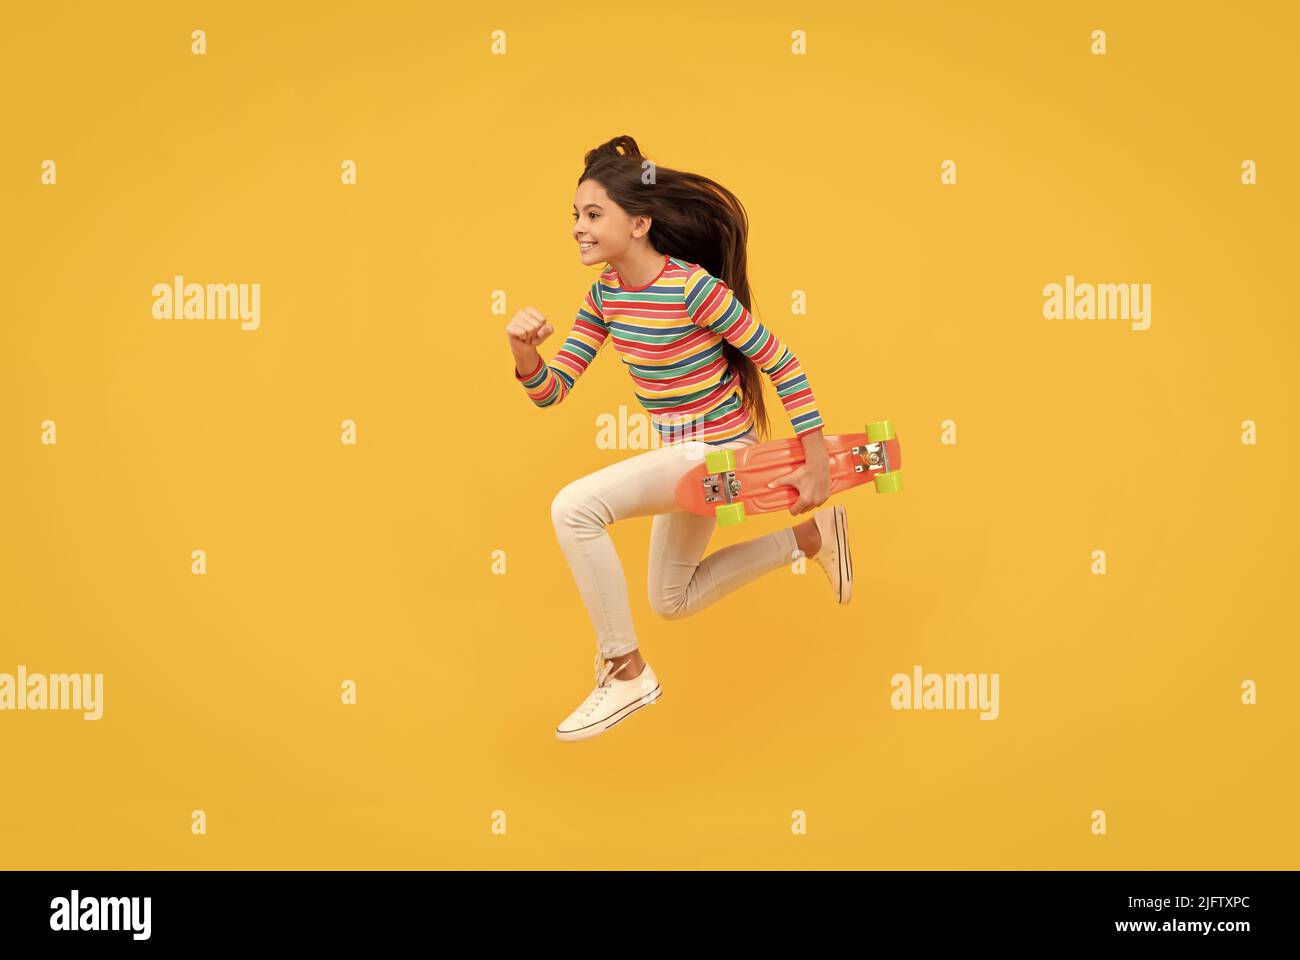 Glücklich energetische Kind Skateboarder springen mit Penny Board Skateboard, Kindheit Stockfoto